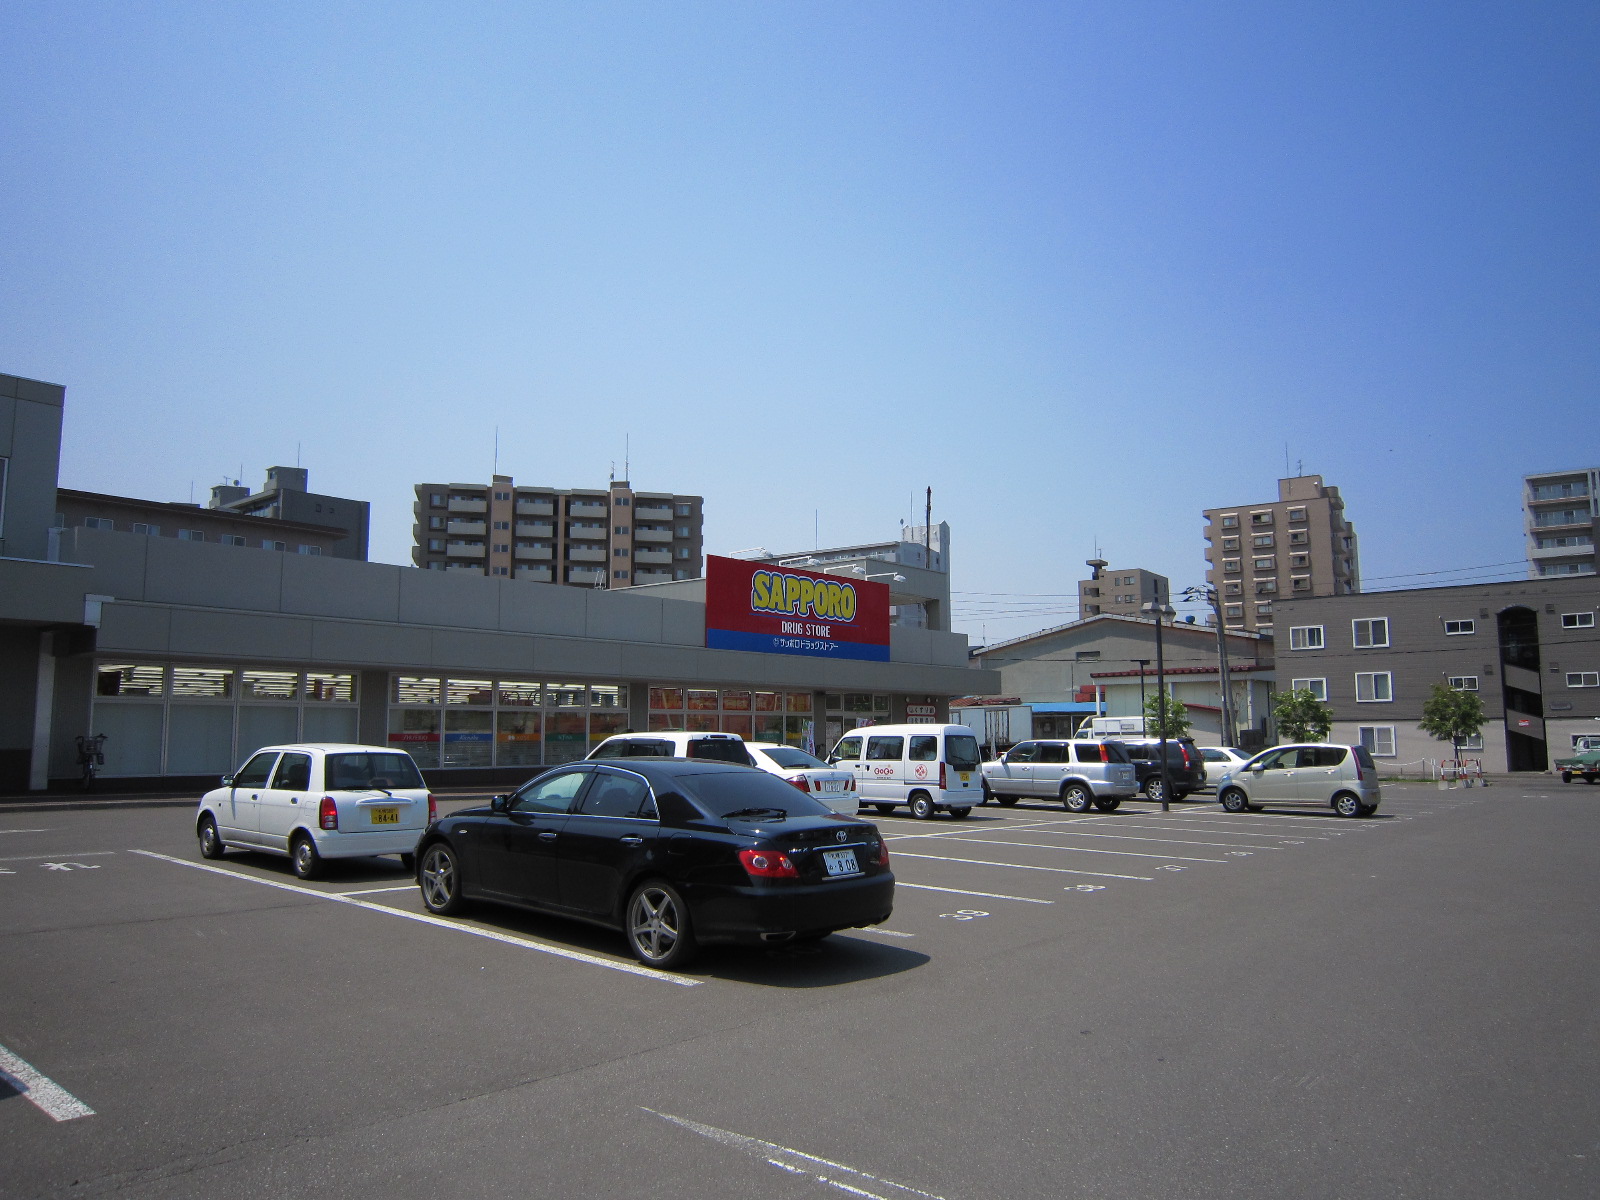 Dorakkusutoa. Sapporo drugstores Higashisapporo shop 570m until (drugstore)